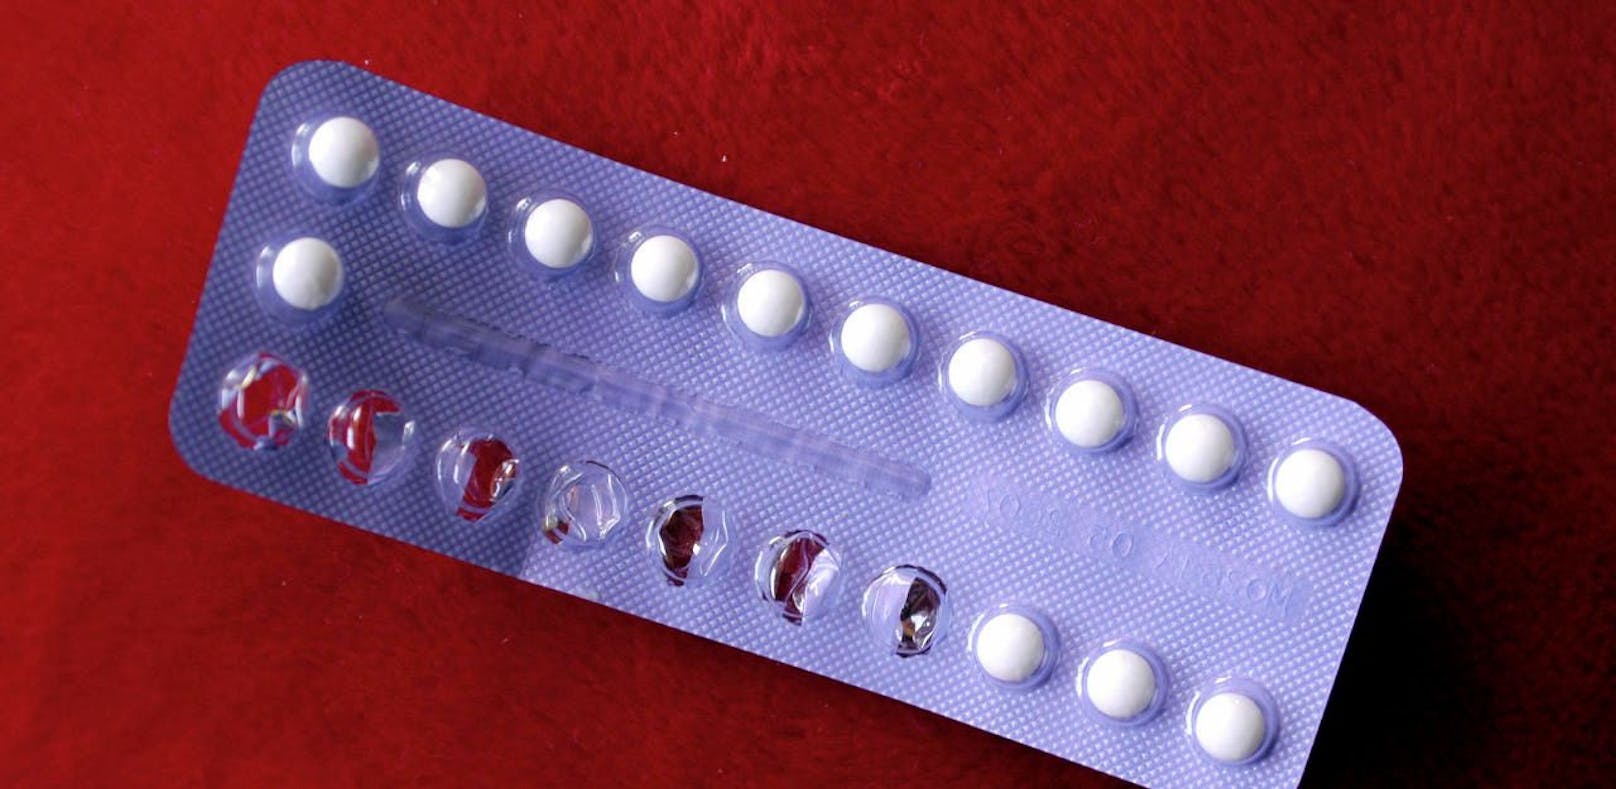 Ermittler fanden in der Wohnung der Frau mehrere Packungen der Anti-Baby-Pille.